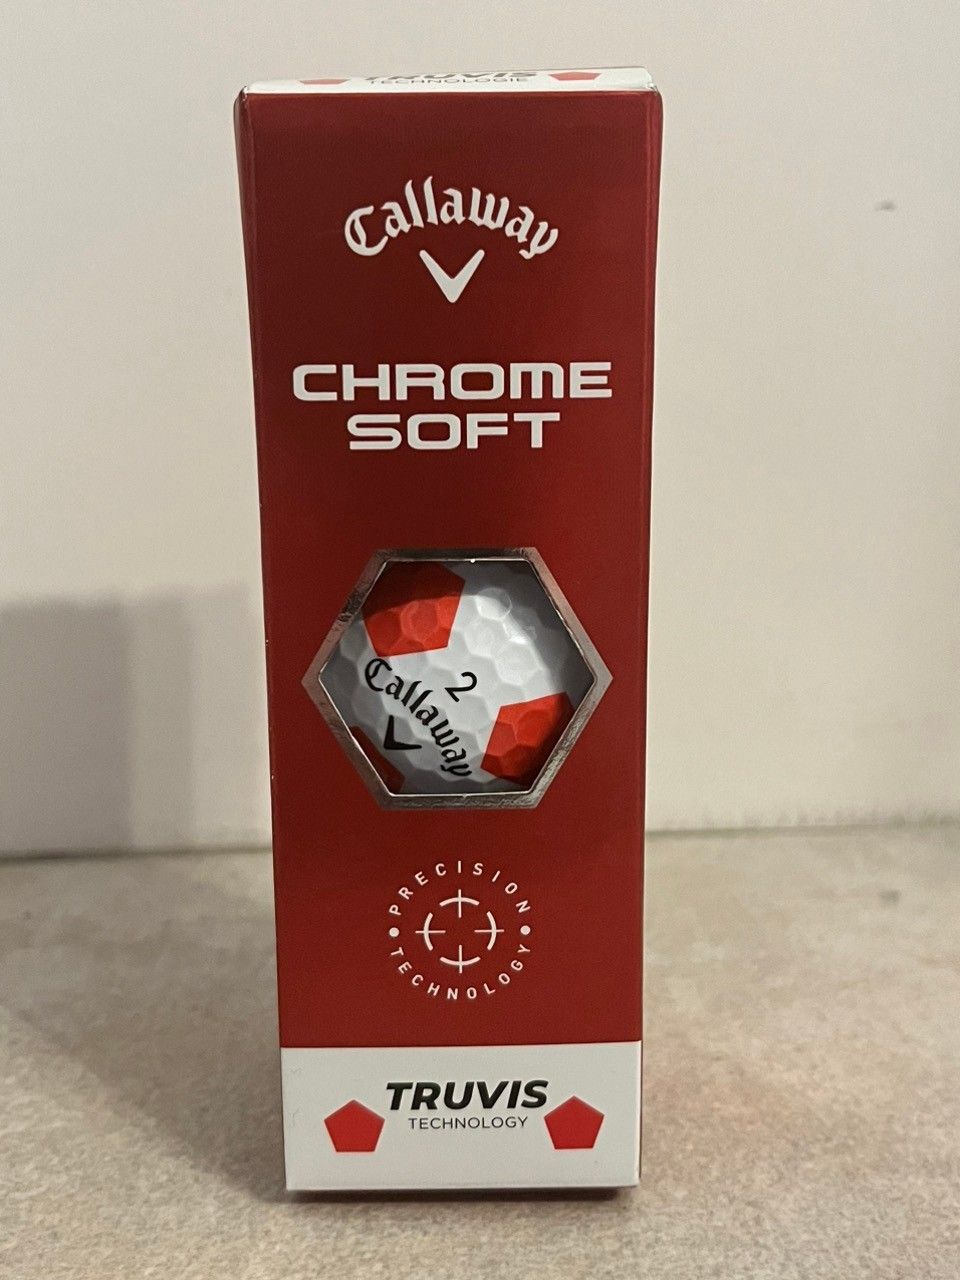 3x Uusia ja käyttämättömiä Callaway Chrome soft palloja